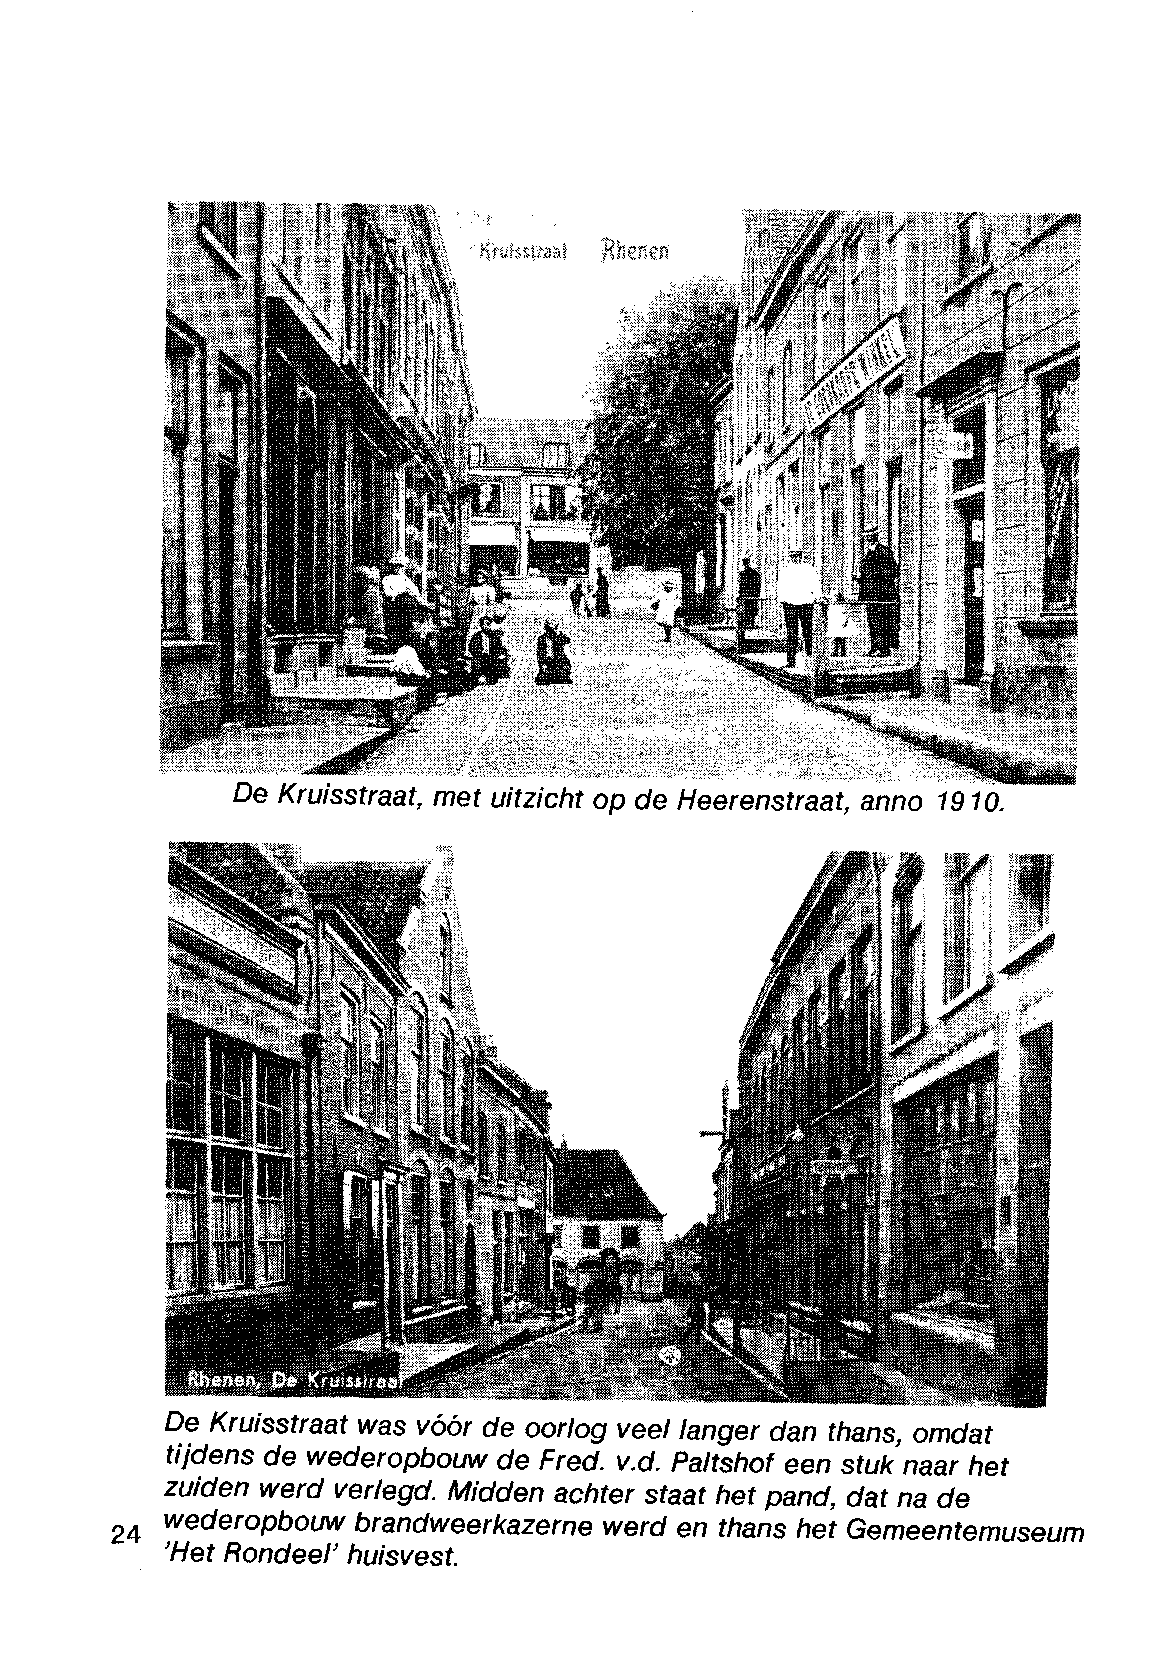 De Kruisstraat, met uitzicht op de Heerenstraat, anno 1910. De Kruisstraat was vóór de oorlog veel langer dan thans, omdat tijdens de wederopbouw de Fred. v.d. Paltshof een stuk naar het zuiden werd verlegd.